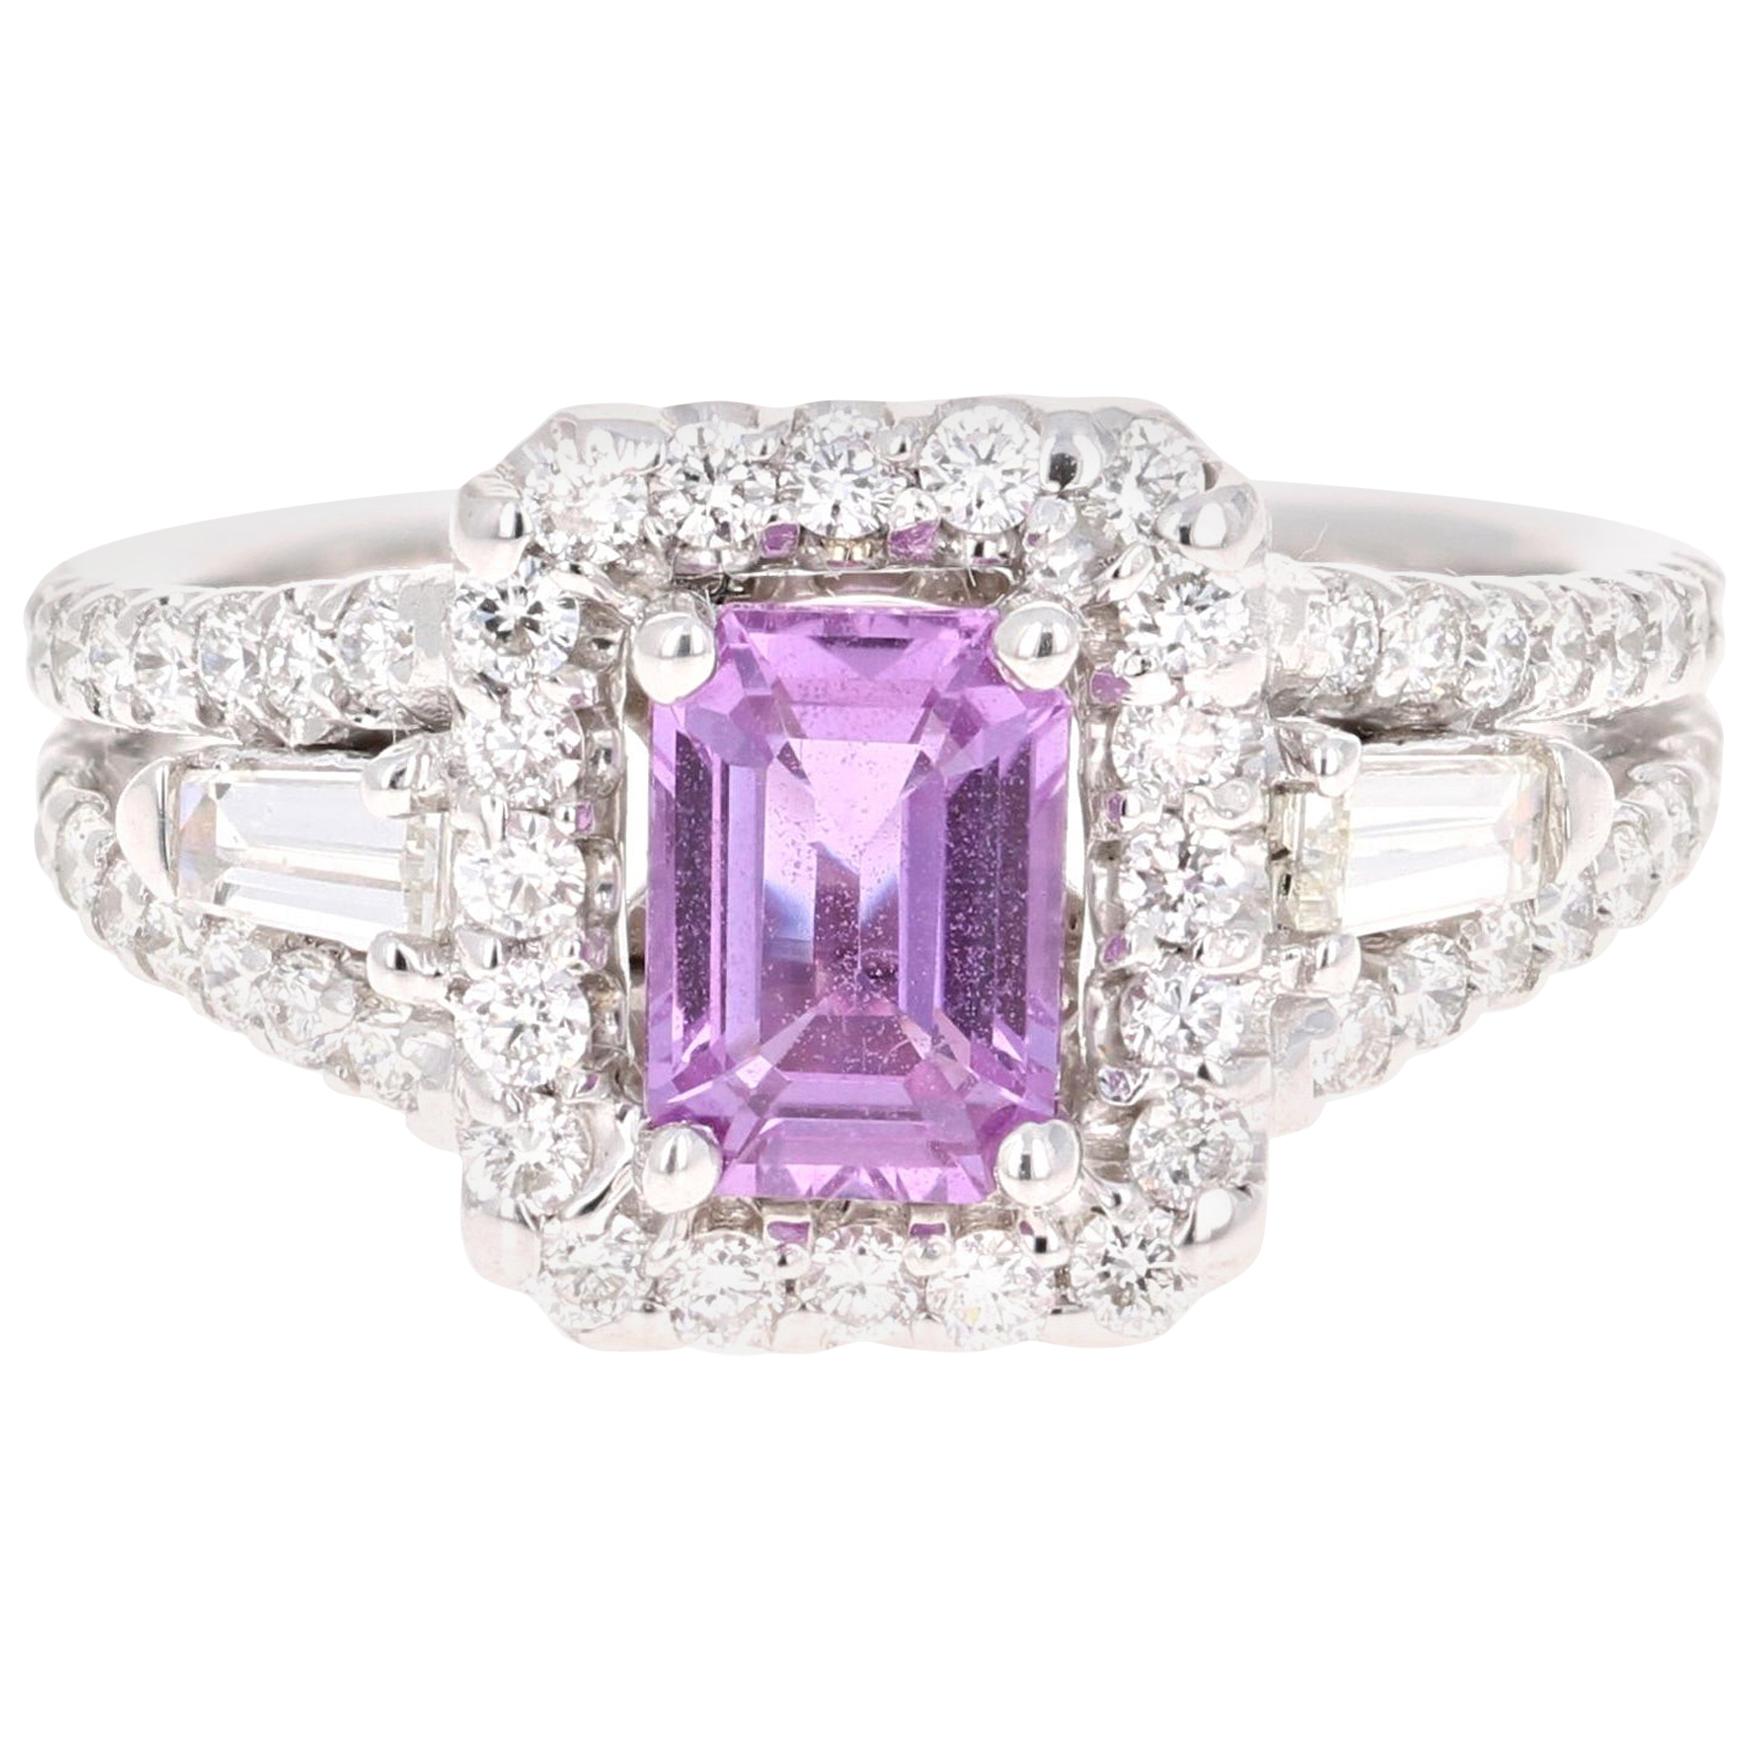 2.14 Carat Pink Sapphire Diamond 14 Karat White Gold Ring GIA Certified